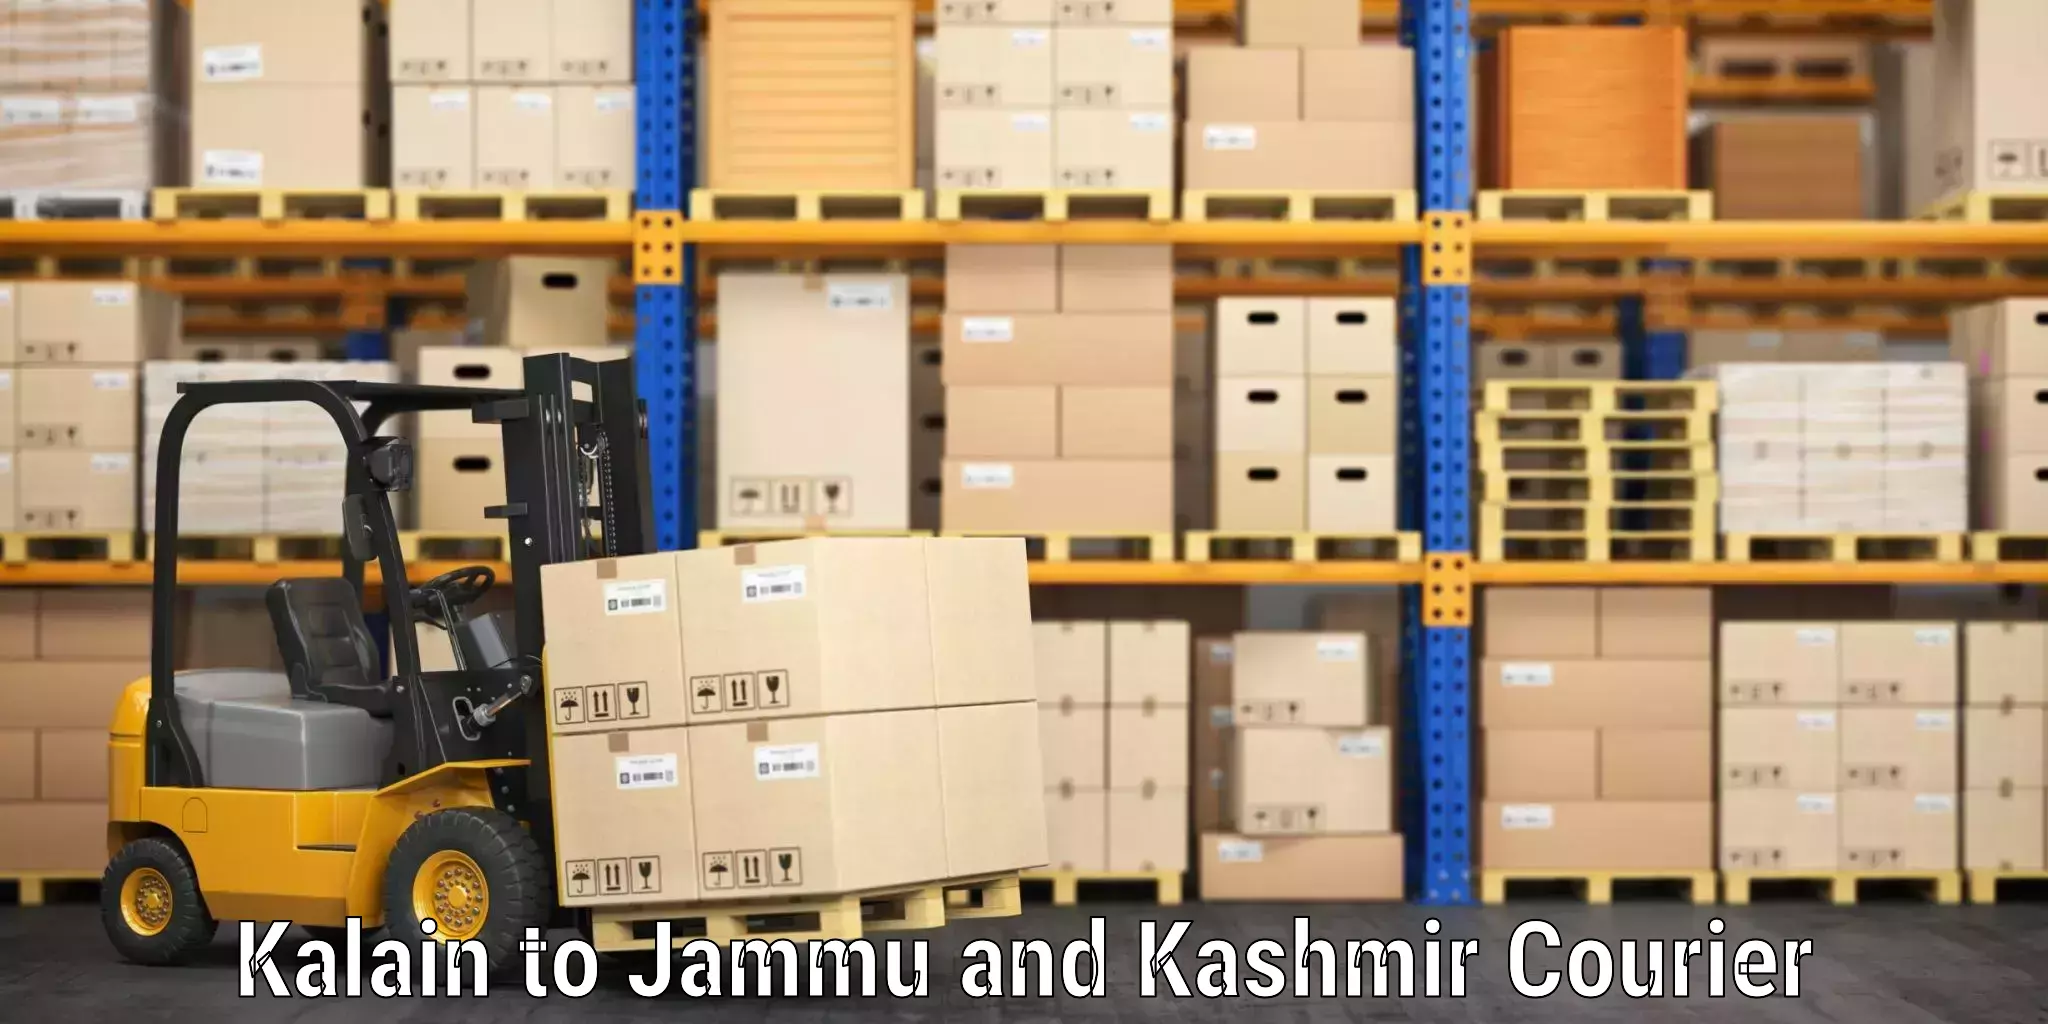 Doorstep luggage pickup Kalain to Jammu and Kashmir